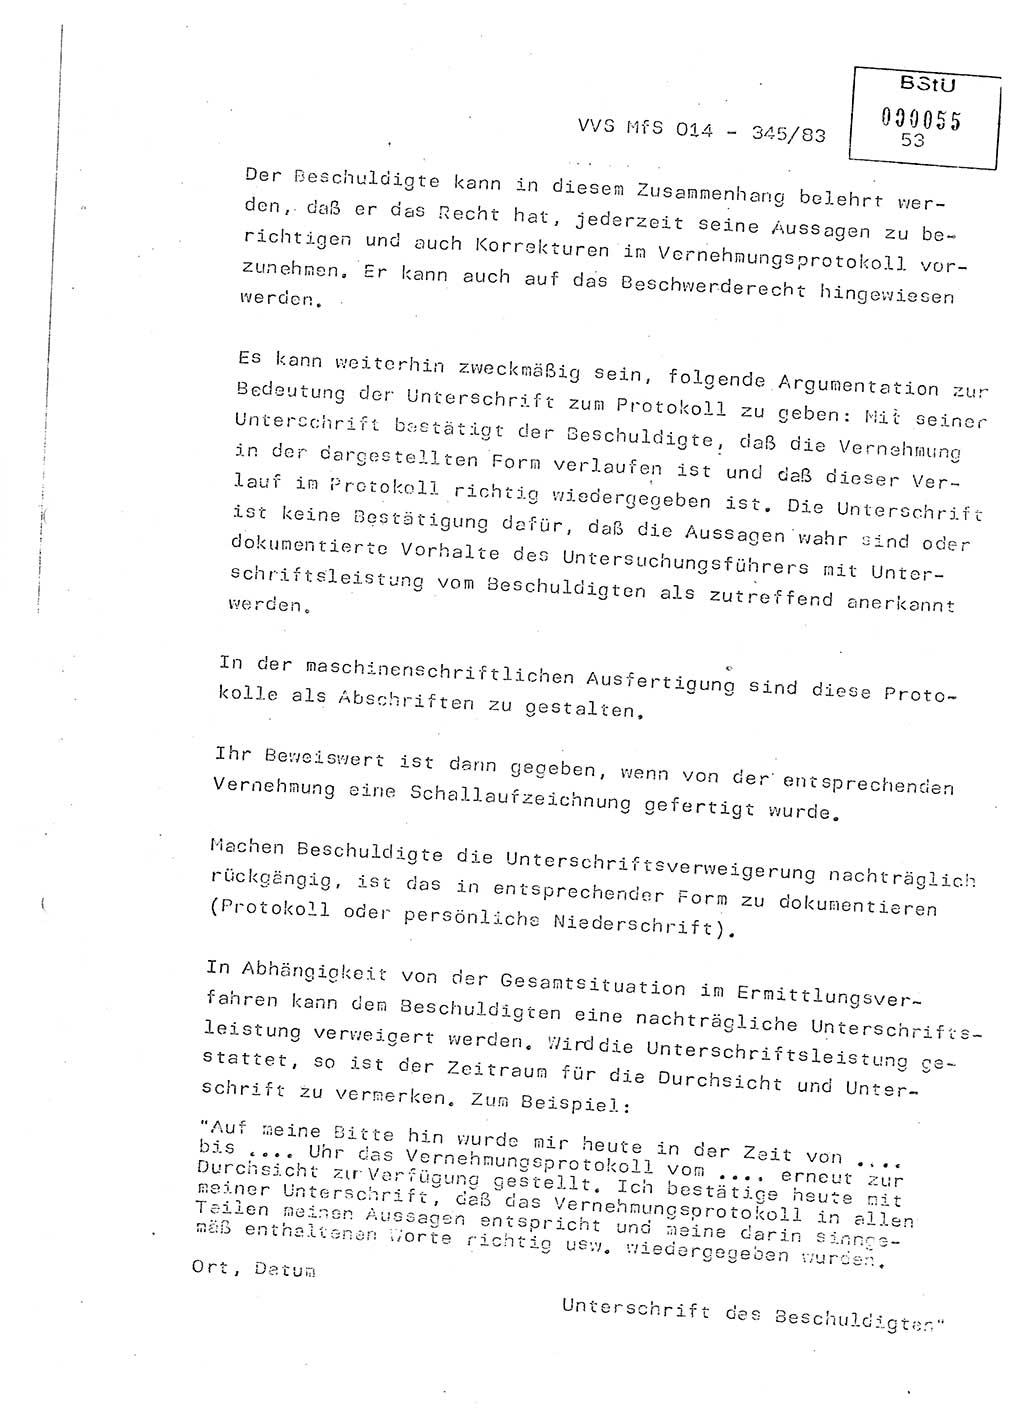 Lektion Ministerium für Staatssicherheit (MfS) [Deutsche Demokratische Republik (DDR)], Hauptabteilung (HA) Ⅸ, Vertrauliche Verschlußsache (VVS) o014-345/83, Berlin 1983, Seite 53 (Lekt. MfS DDR HA Ⅸ VVS o014-345/83 1983, S. 53)